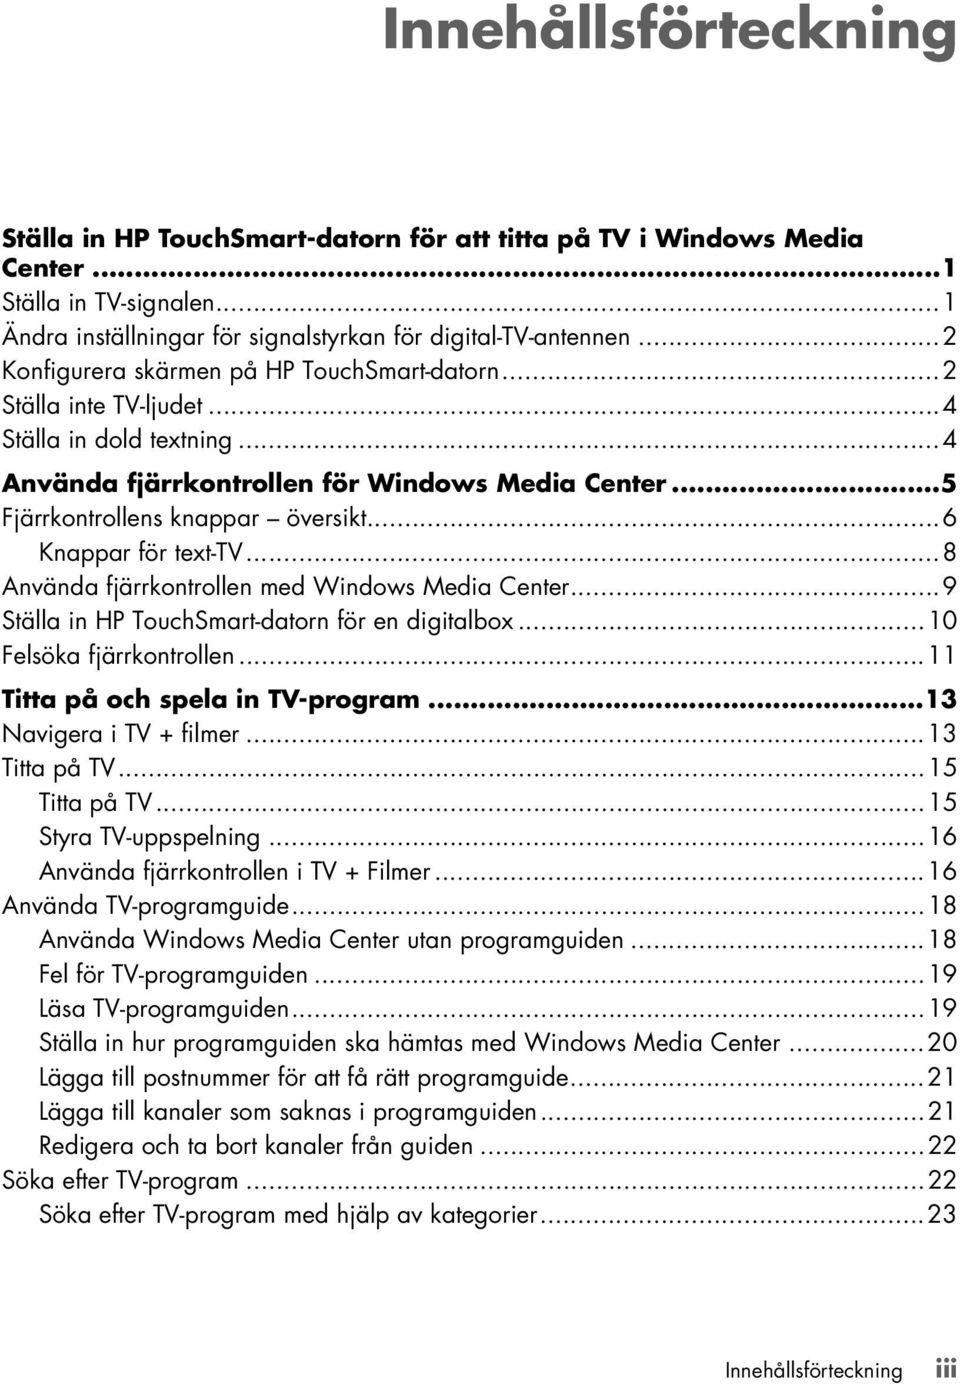 ..6 Knappar för text-tv...8 Använda fjärrkontrollen med Windows Media Center...9 Ställa in HP TouchSmart-datorn för en digitalbox...10 Felsöka fjärrkontrollen...11 Titta på och spela in TV-program.